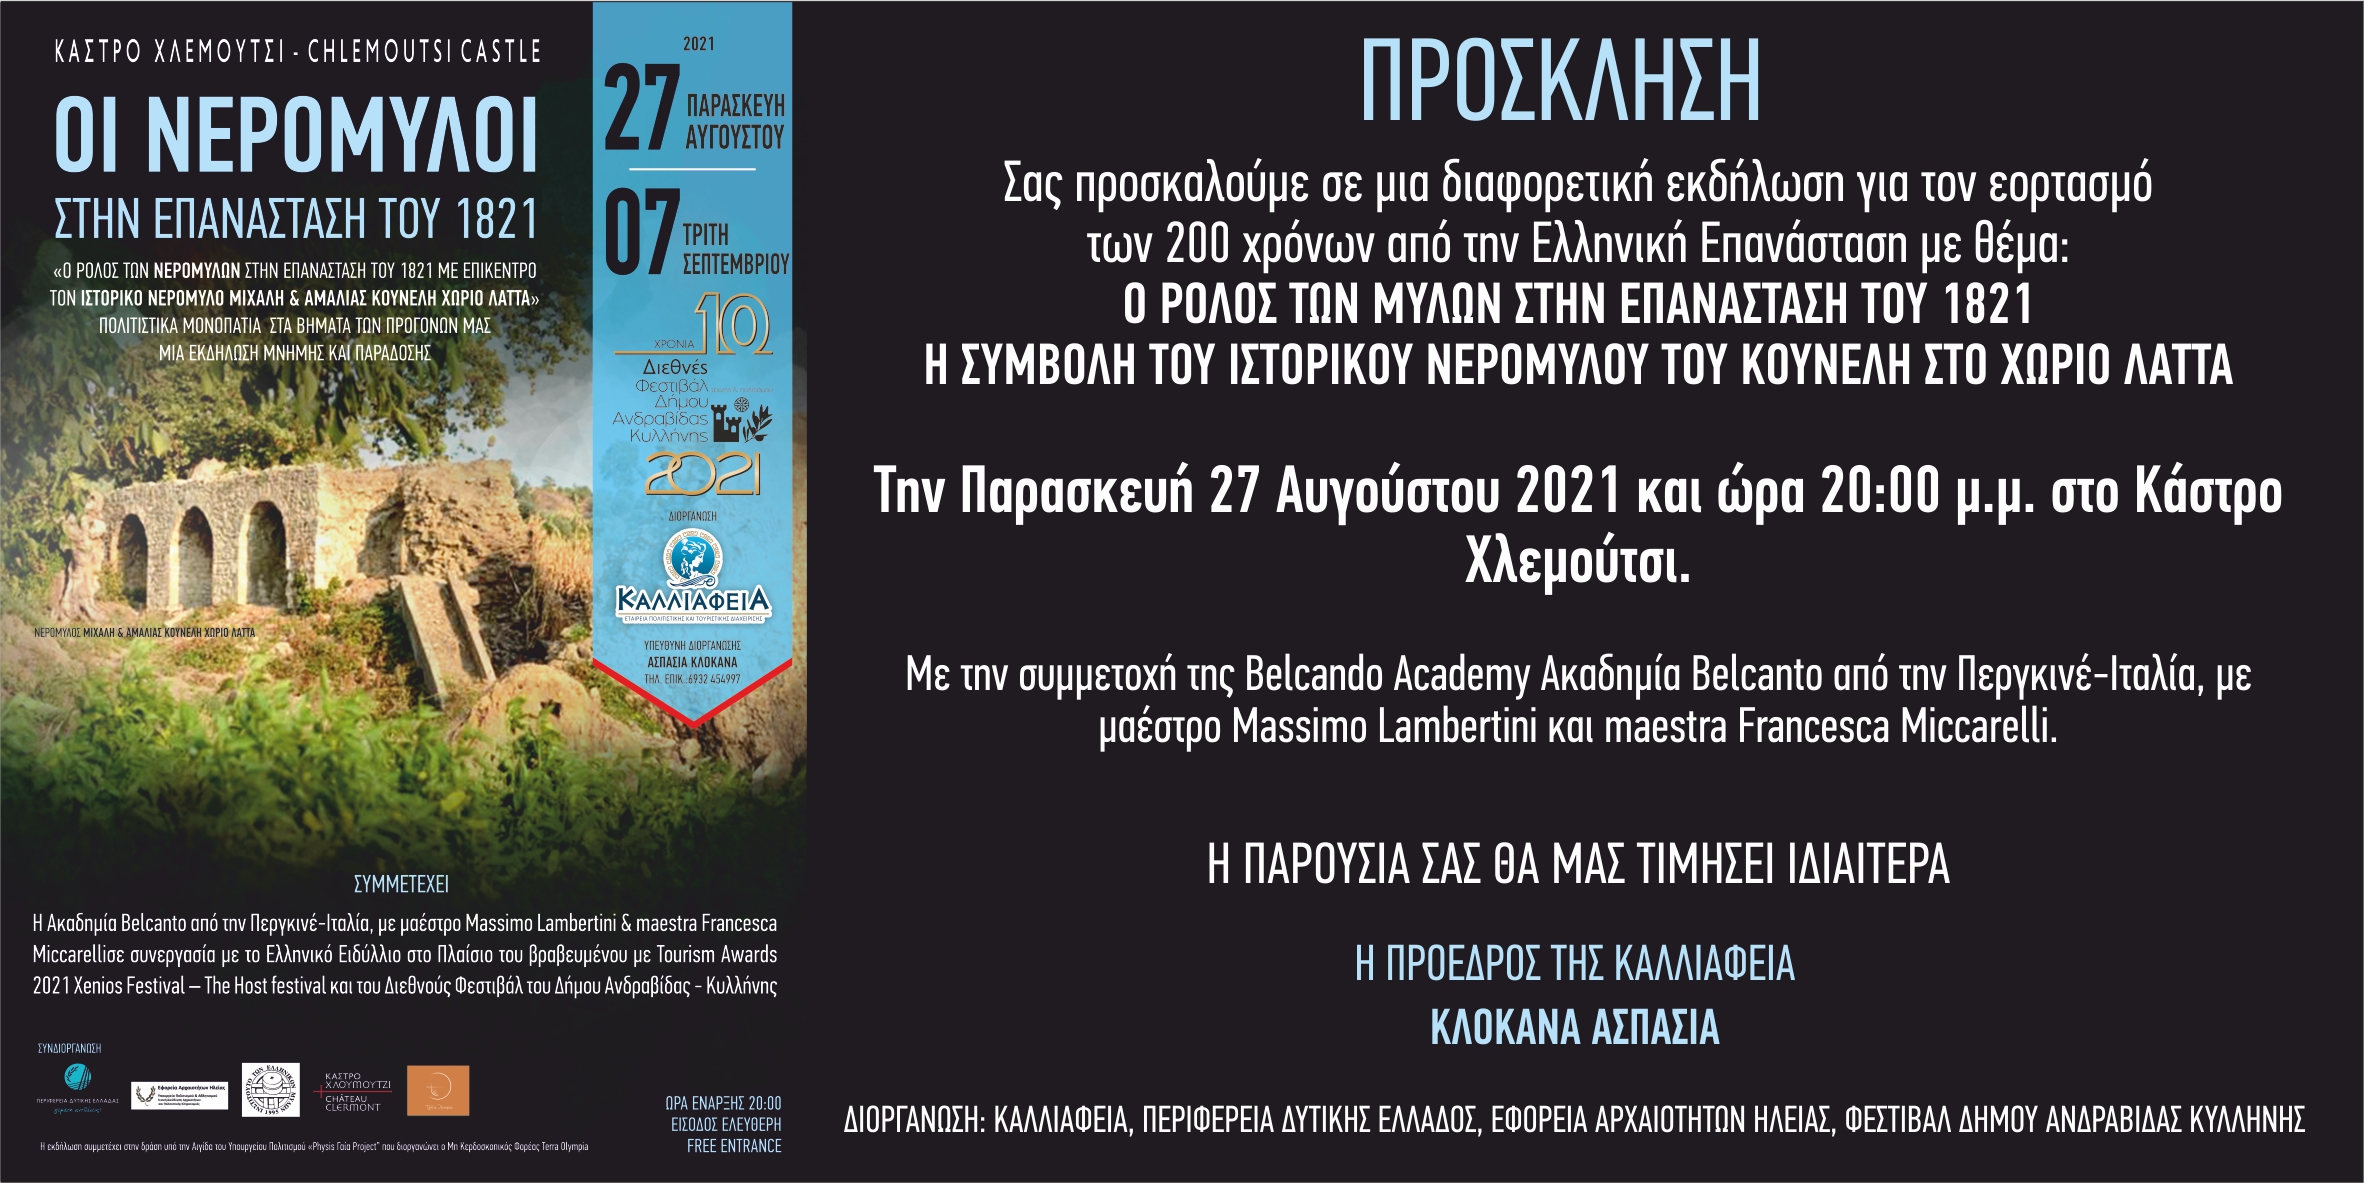 Εκδήλωση στο Κάστρο Χλεμούτσι , με θέμα  :”Oι Νερόμυλοι στην Επανάσταση του 1821»  ο Ιστορικός  Νερόμυλος του Κουνέλη στο χωριό Λάττα στο Προσκήνιο